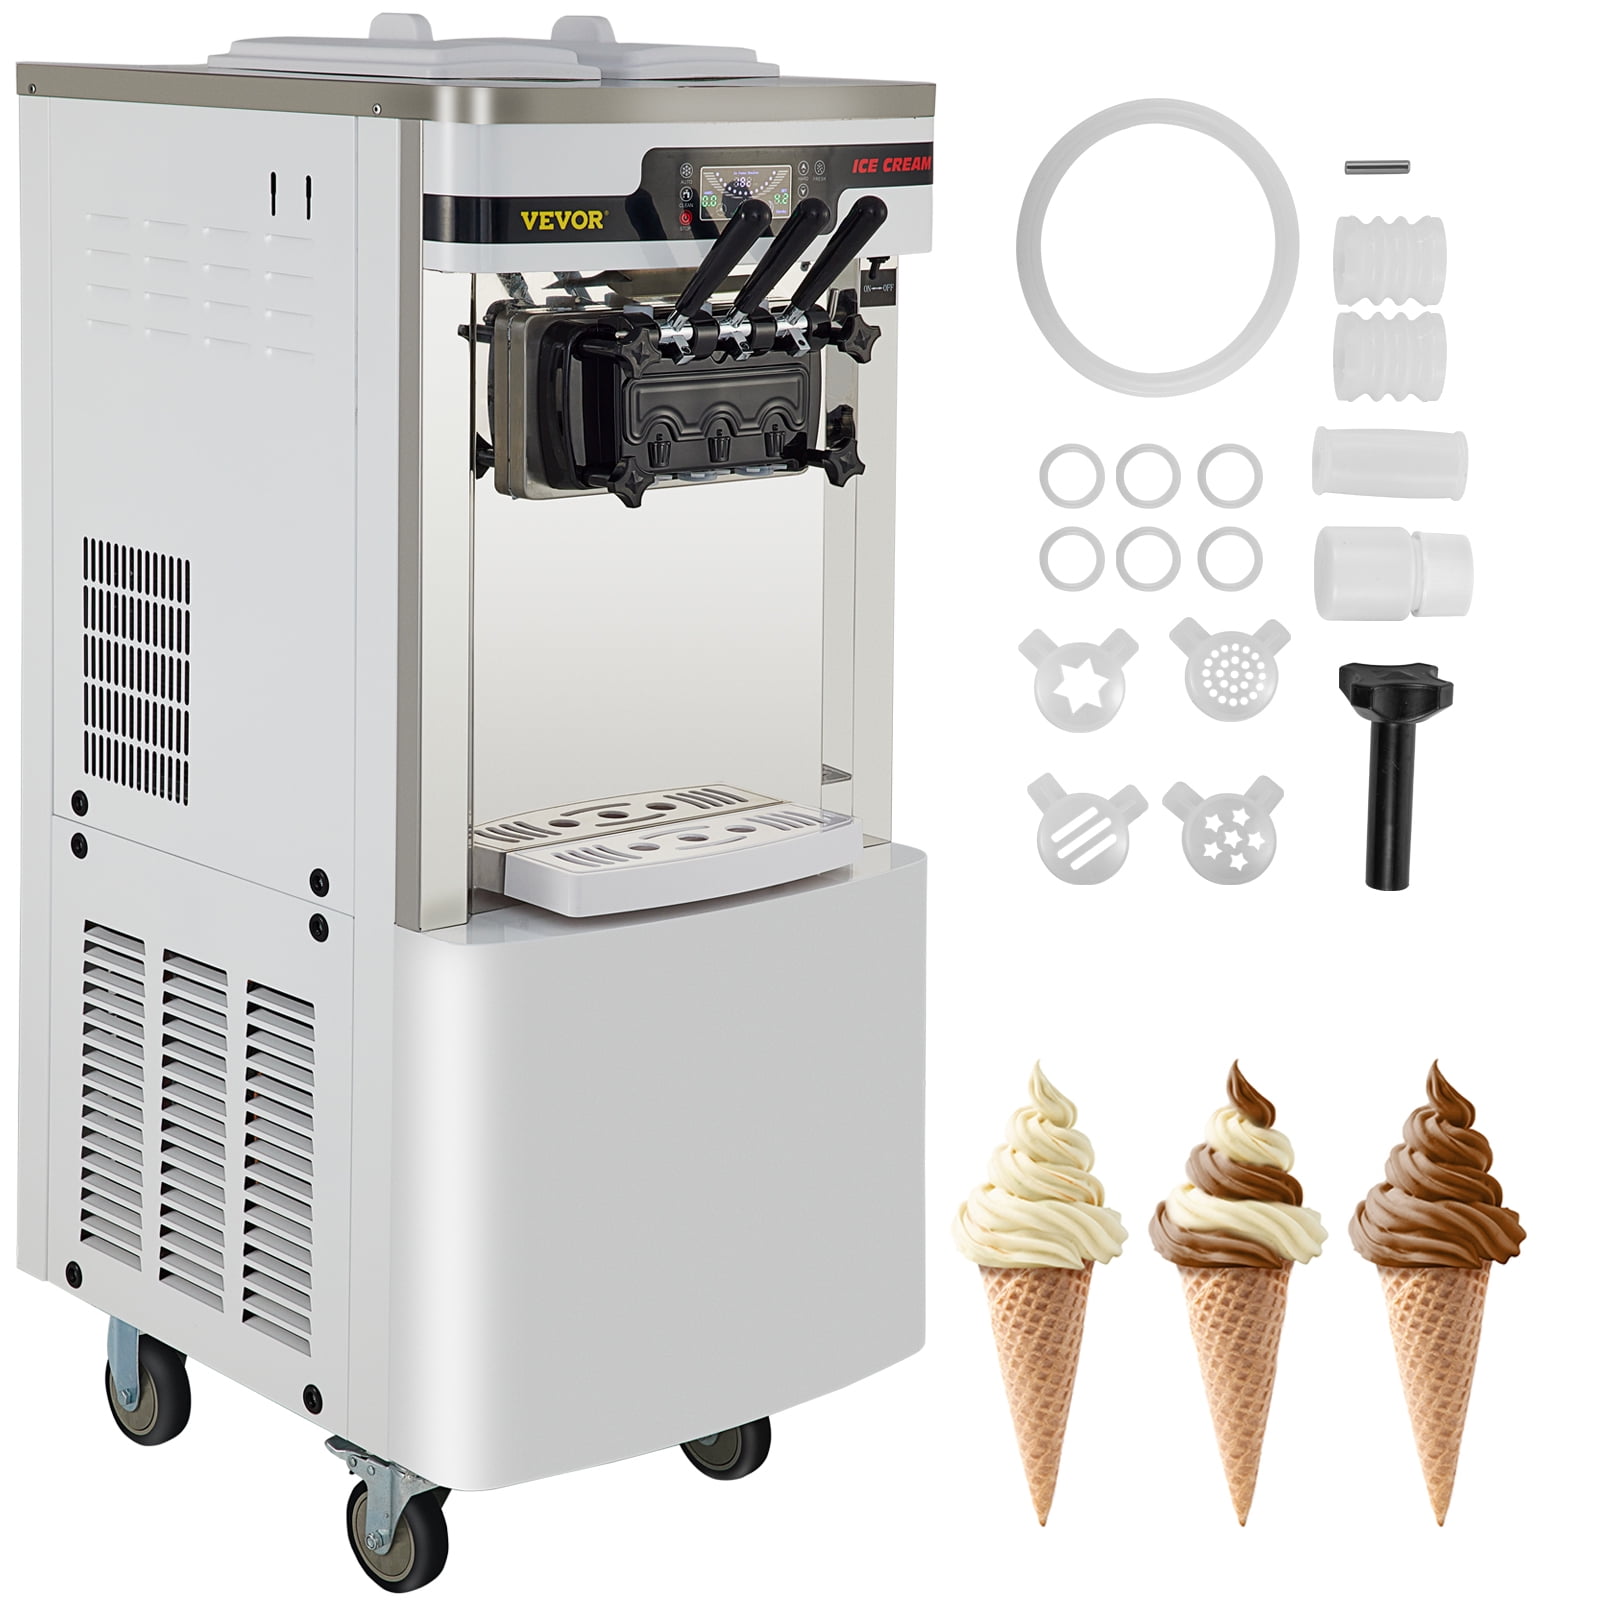 VEVOR Macchina per Gelato Ice Cream Maker 20-28L 5.3-7.4Gallon per Ora Macchina  Gelato